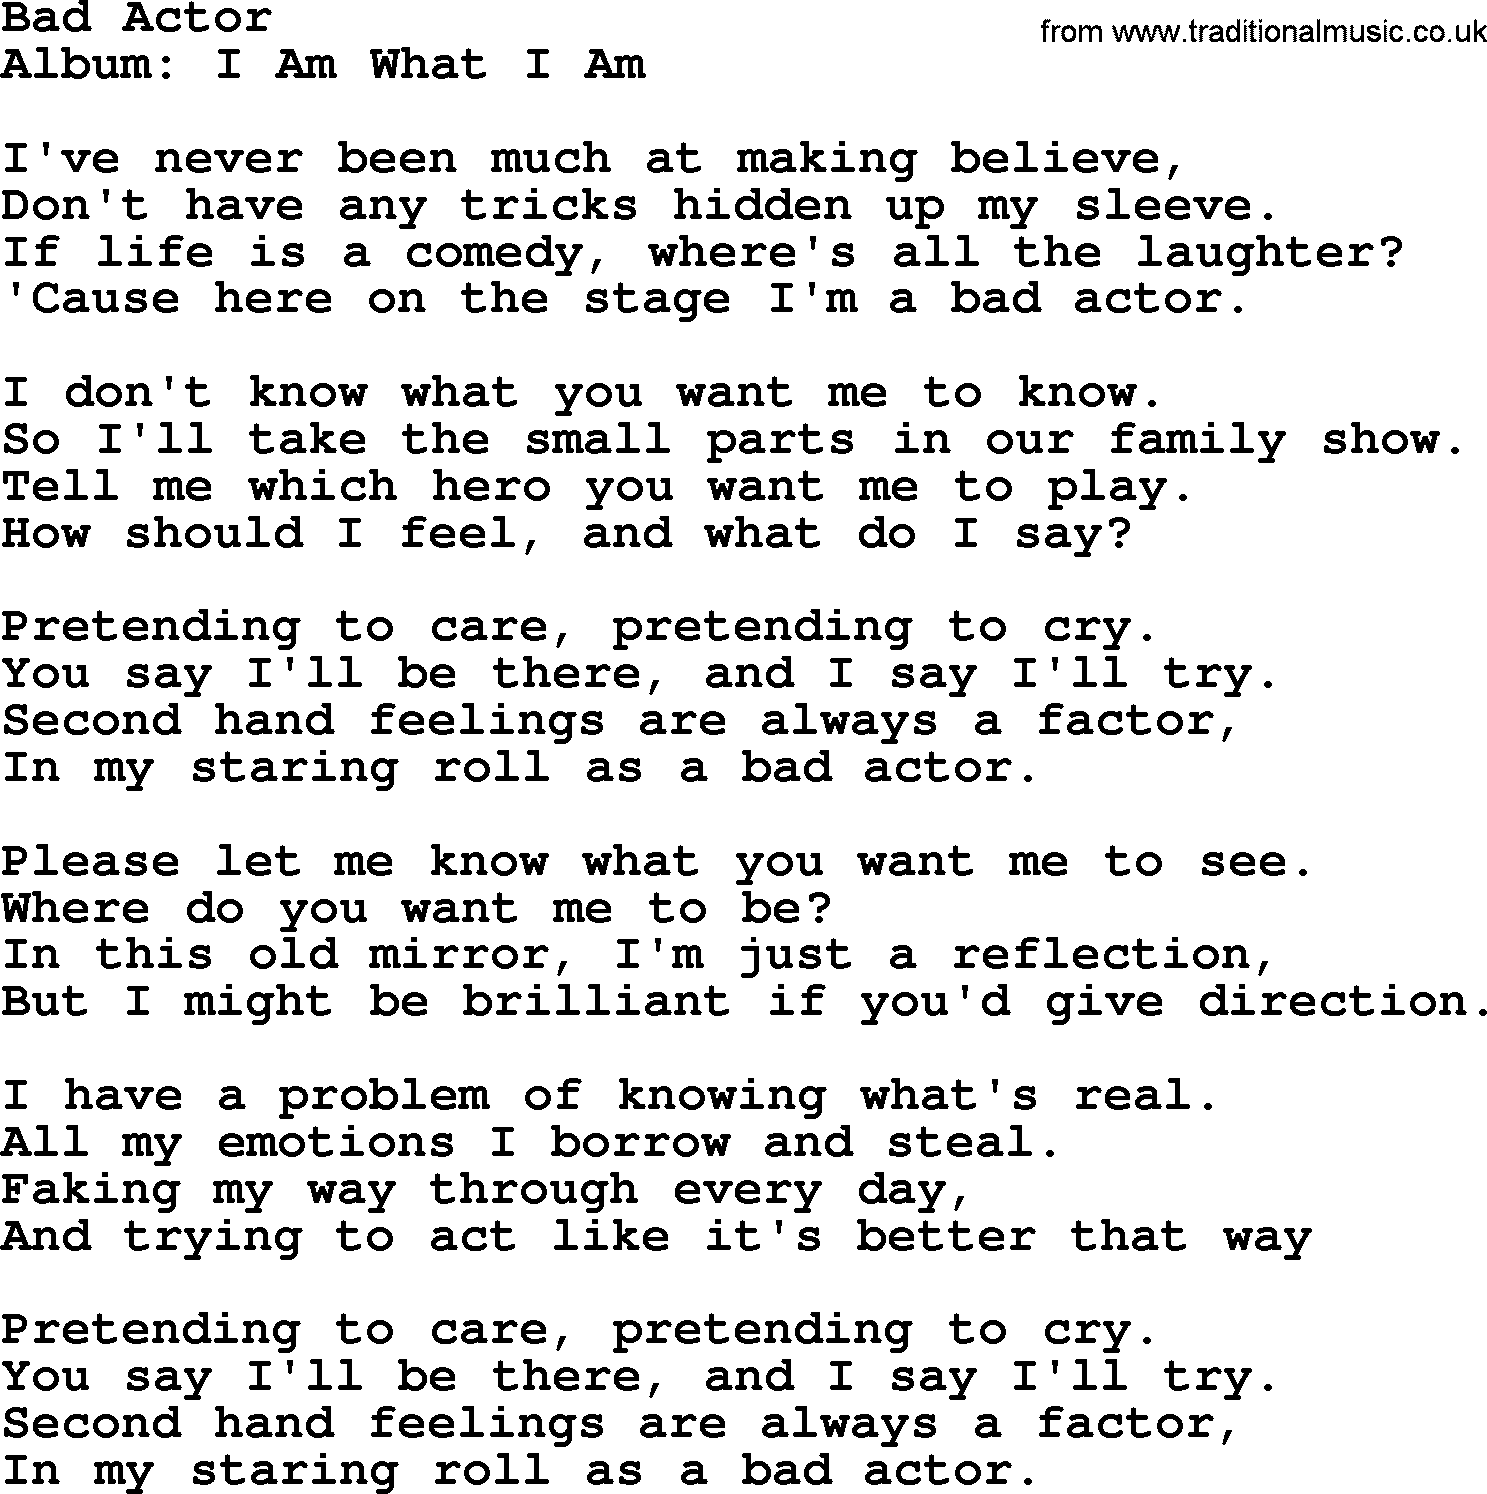 Merle Haggard song: Bad Actor, lyrics.